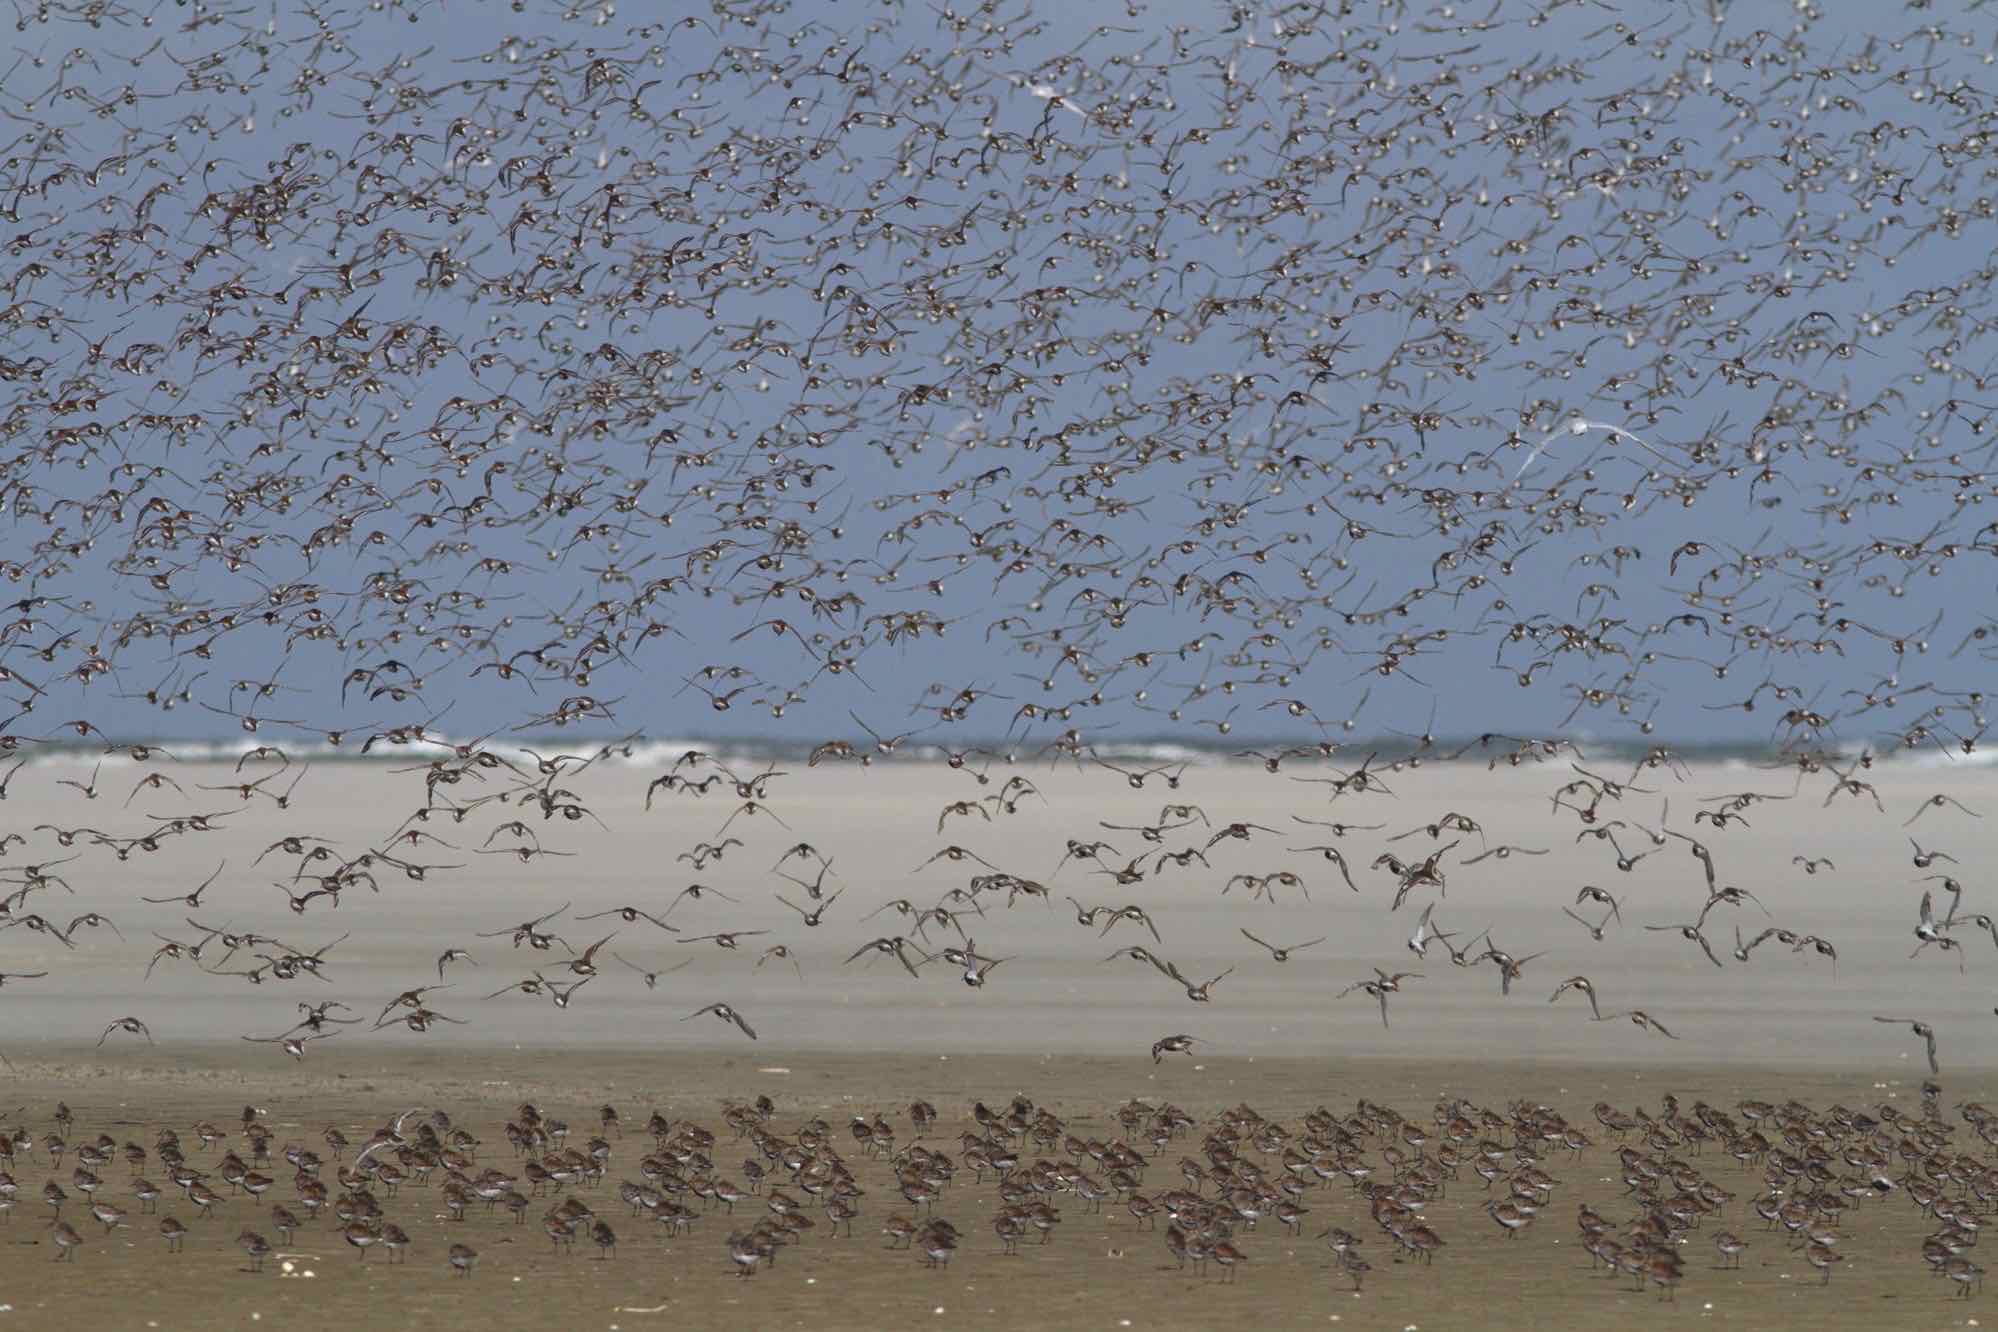 An einem Tag zu einer Sandbank 12 km durchs Watt gehen und dort Vögel zählen? Wir nehmen Sie in diesem eindrucksvoll bebilderten Vortrag mit auf unsere Tour mitten in den Nationalpark.